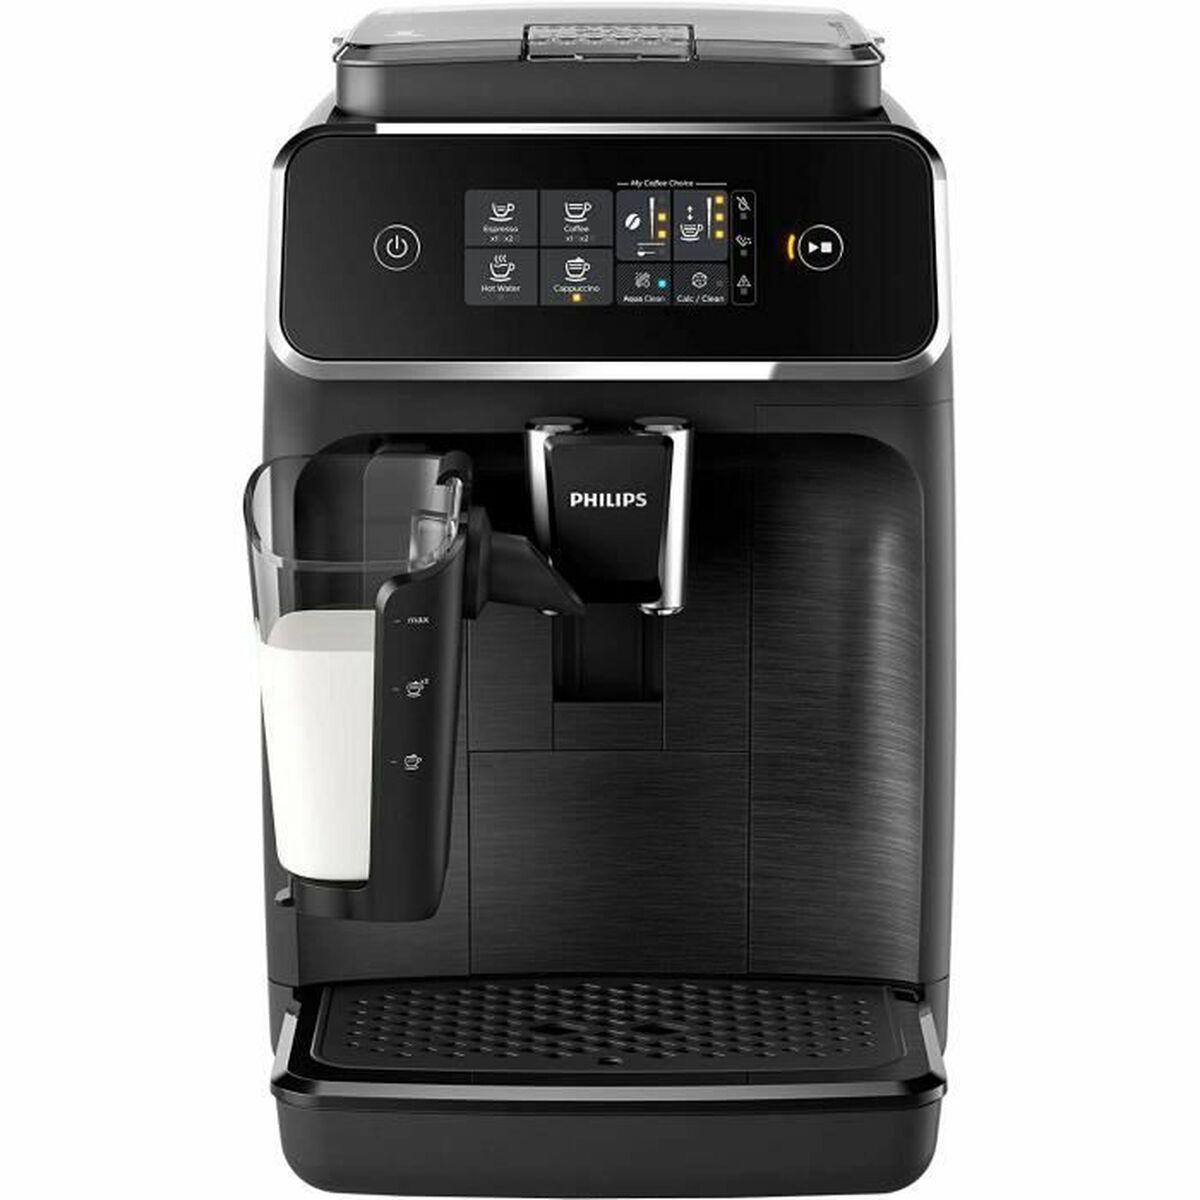 Først Serena Mariner Køb Superautomatisk kaffemaskine Philips Series 2200 EP2230/10 Sort 1500 W  15 bar 1,8 L fra boligcenter.dk